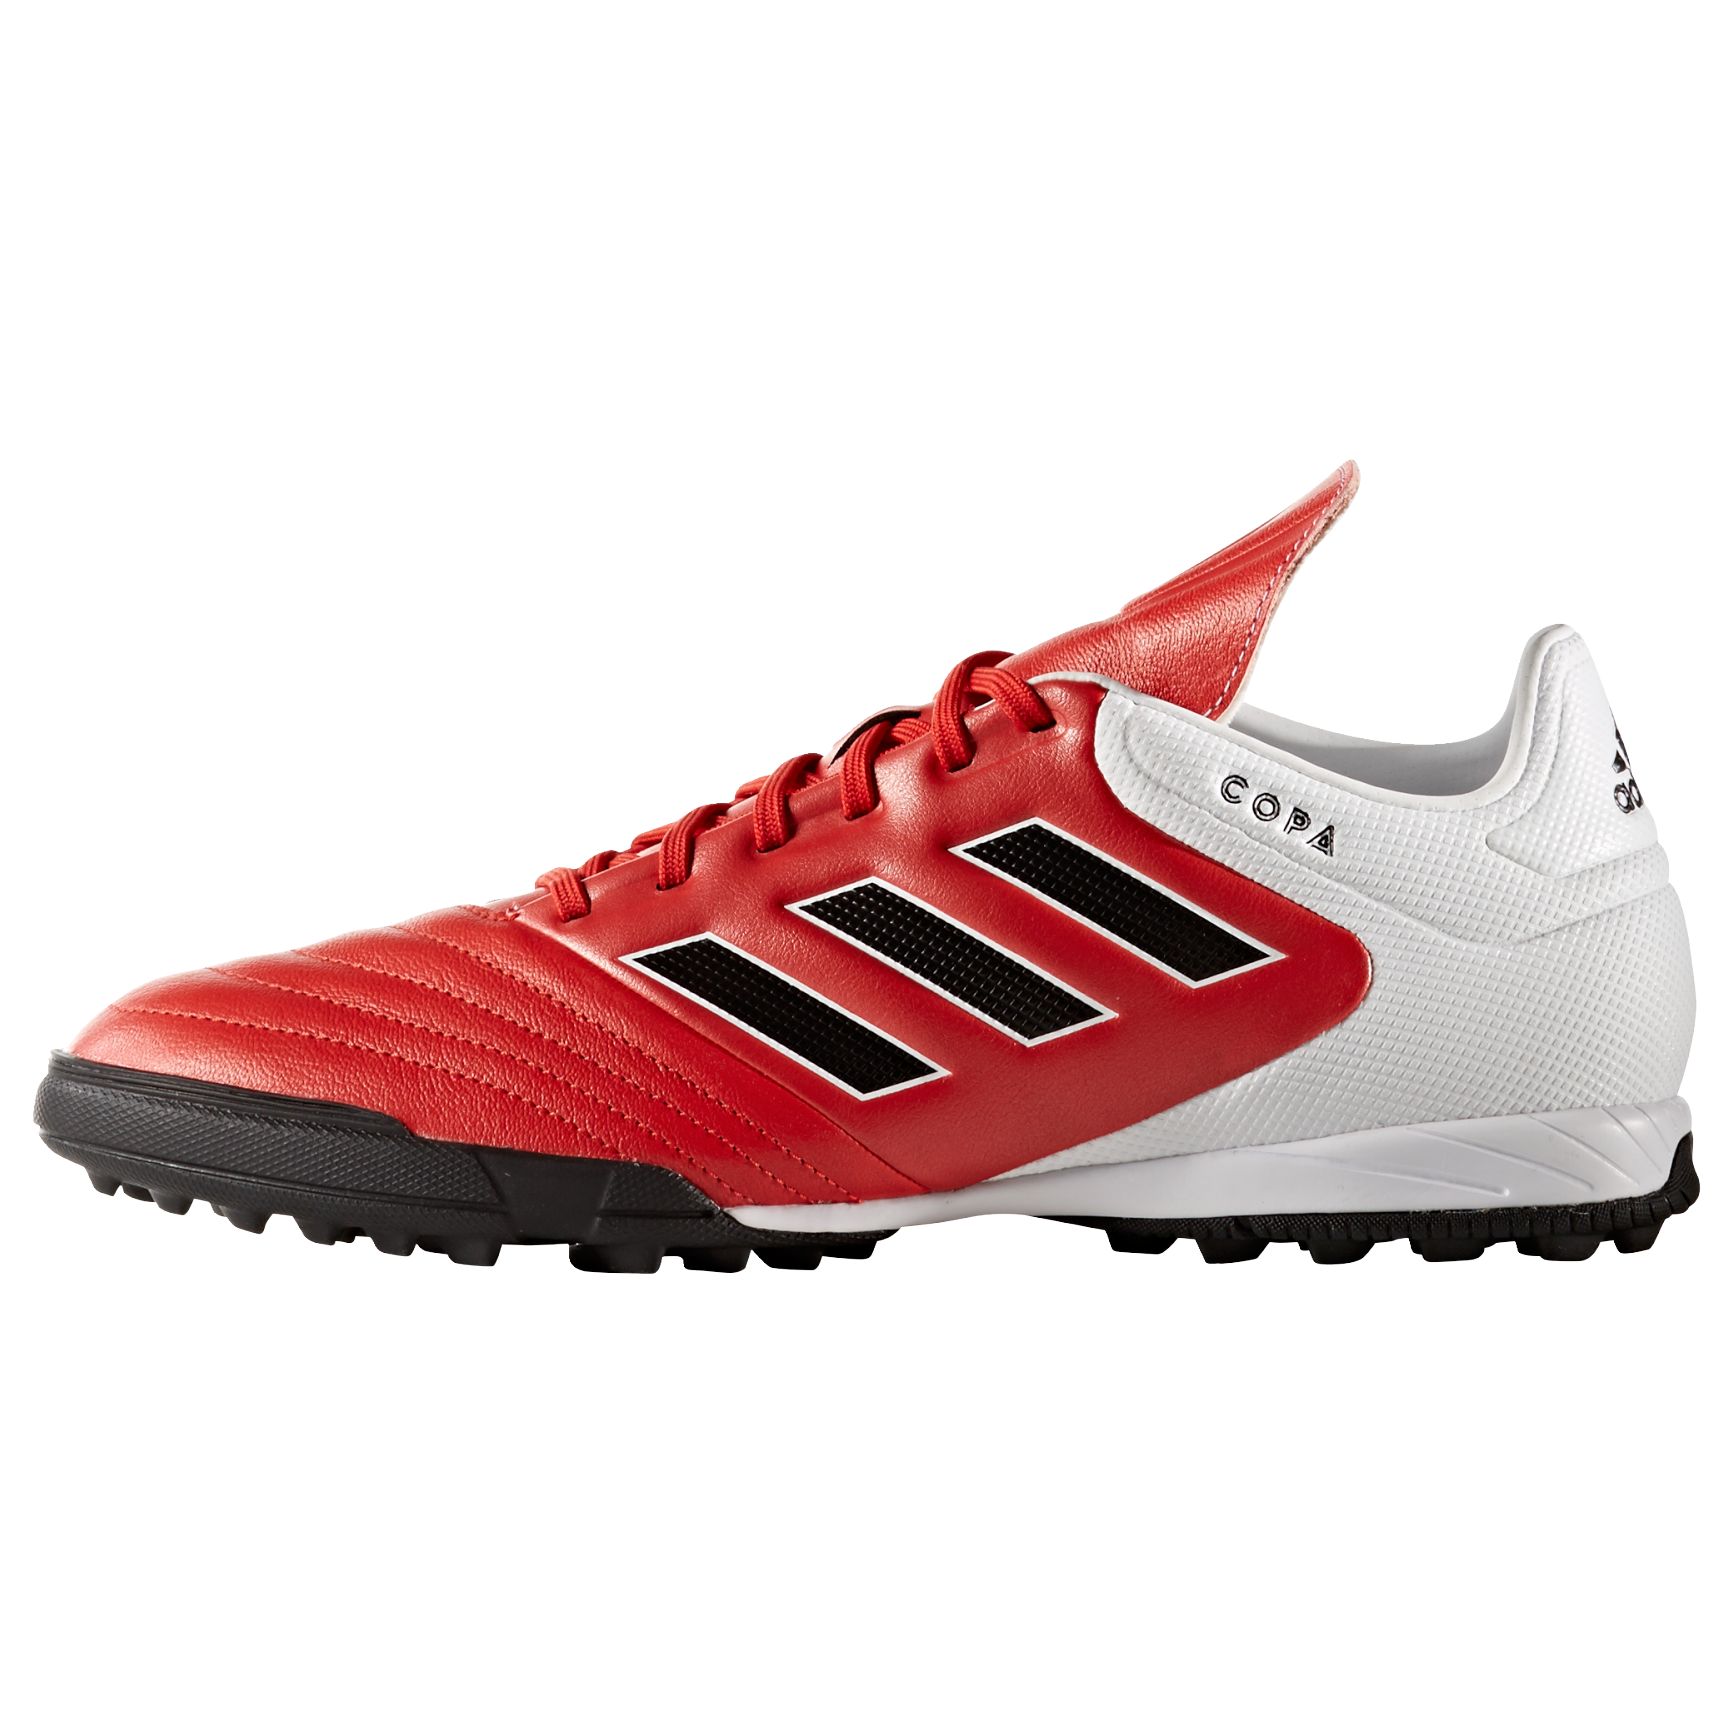 Adidas Copa 17.3 TF Men's Boots